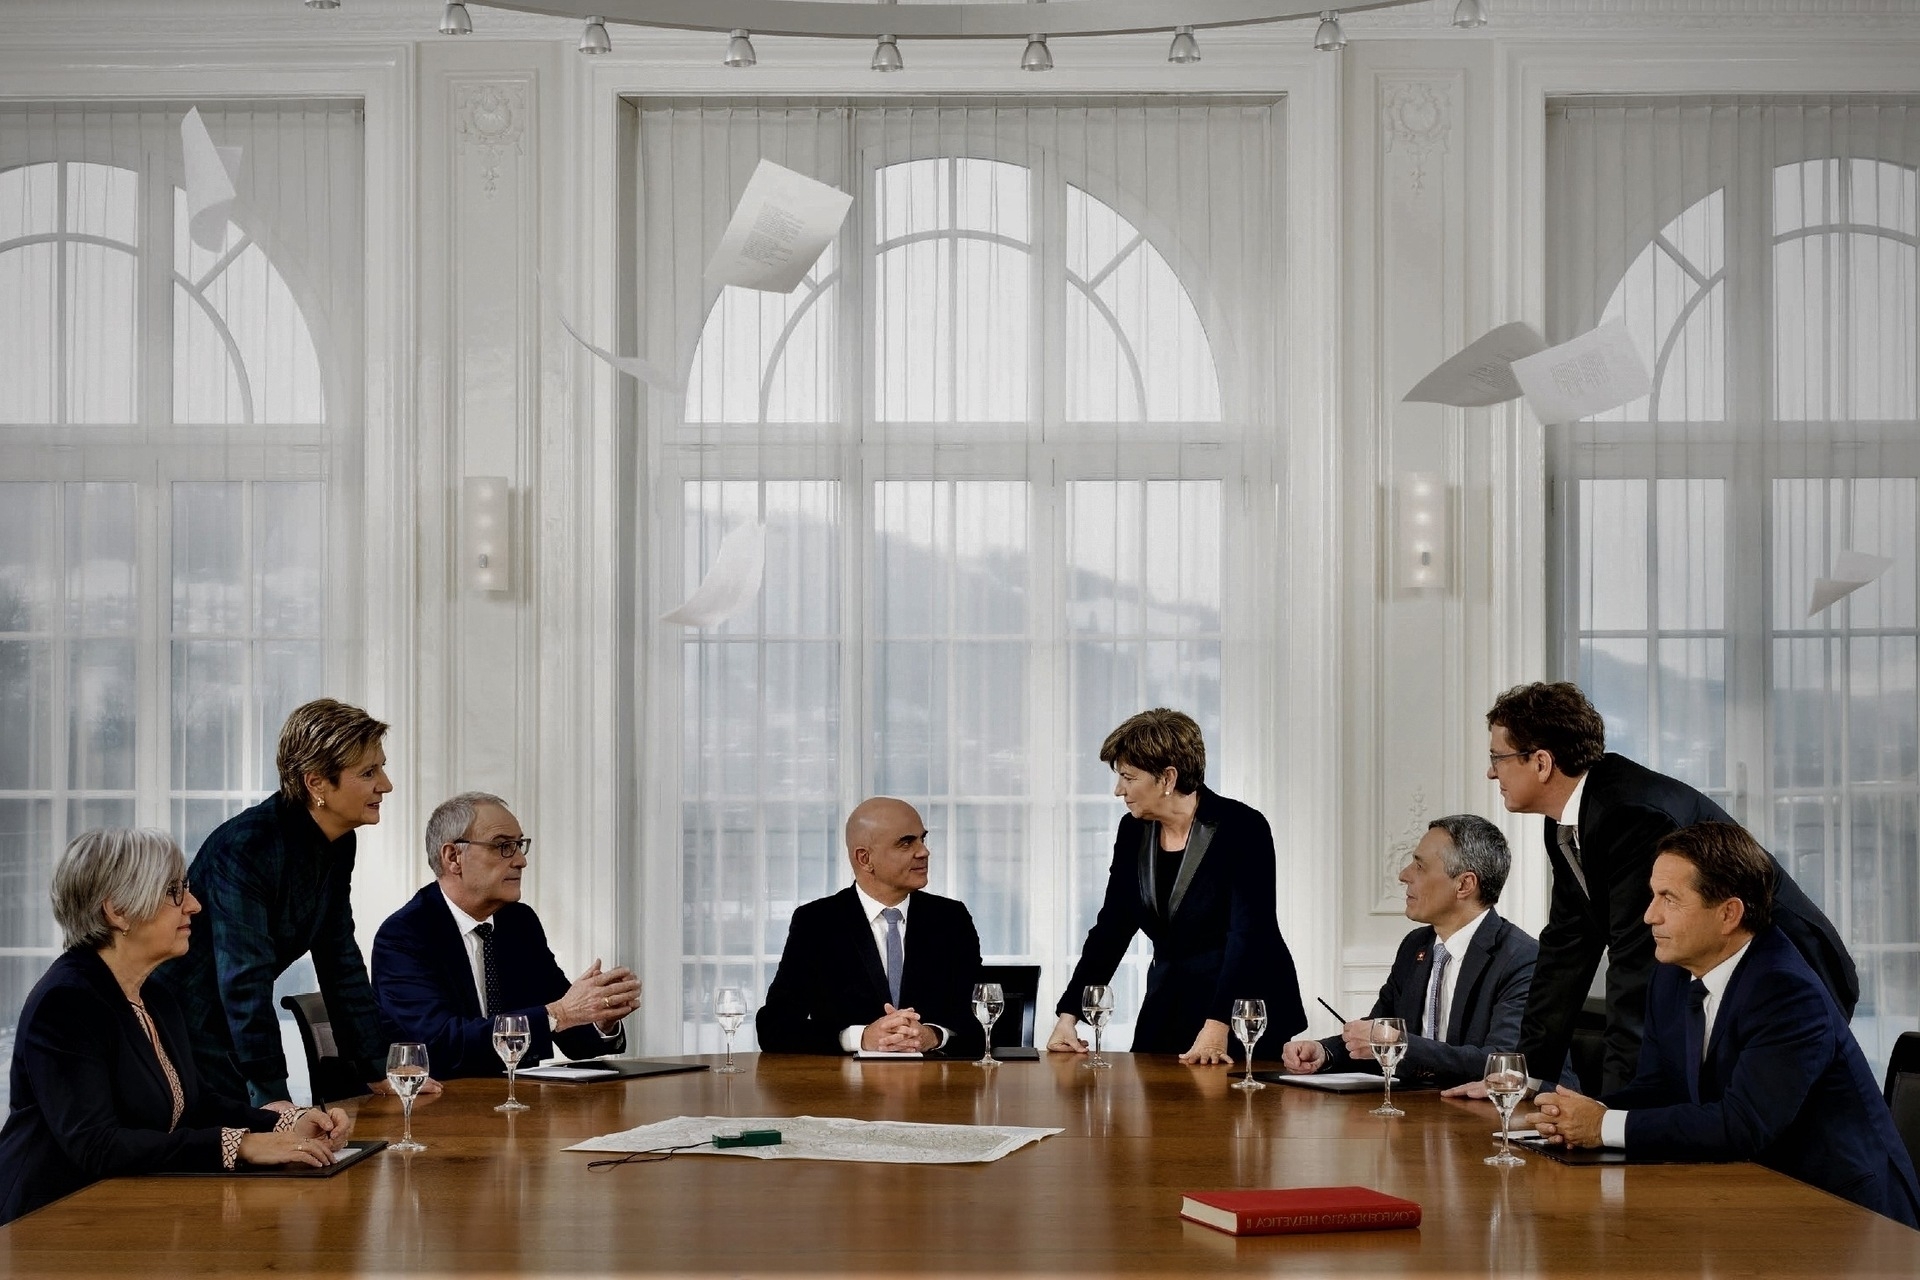 Ελβετία: η επίσημη φωτογραφία του 2023 σε αντίστροφη εκδοχή του Ομοσπονδιακού Συμβουλίου της Ελβετικής Συνομοσπονδίας: από αριστερά προς τα δεξιά, οι Ομοσπονδιακοί Σύμβουλοι Elisabeth Baume-Schndeider, Karin Keller-Sutter, Guy Parmelin, Alain Berset (Πρόεδρος), Viola Amherd (Αντιπρόεδρος), Ignazio Chancellor και ο Ομοσπονδιακός Changerr.